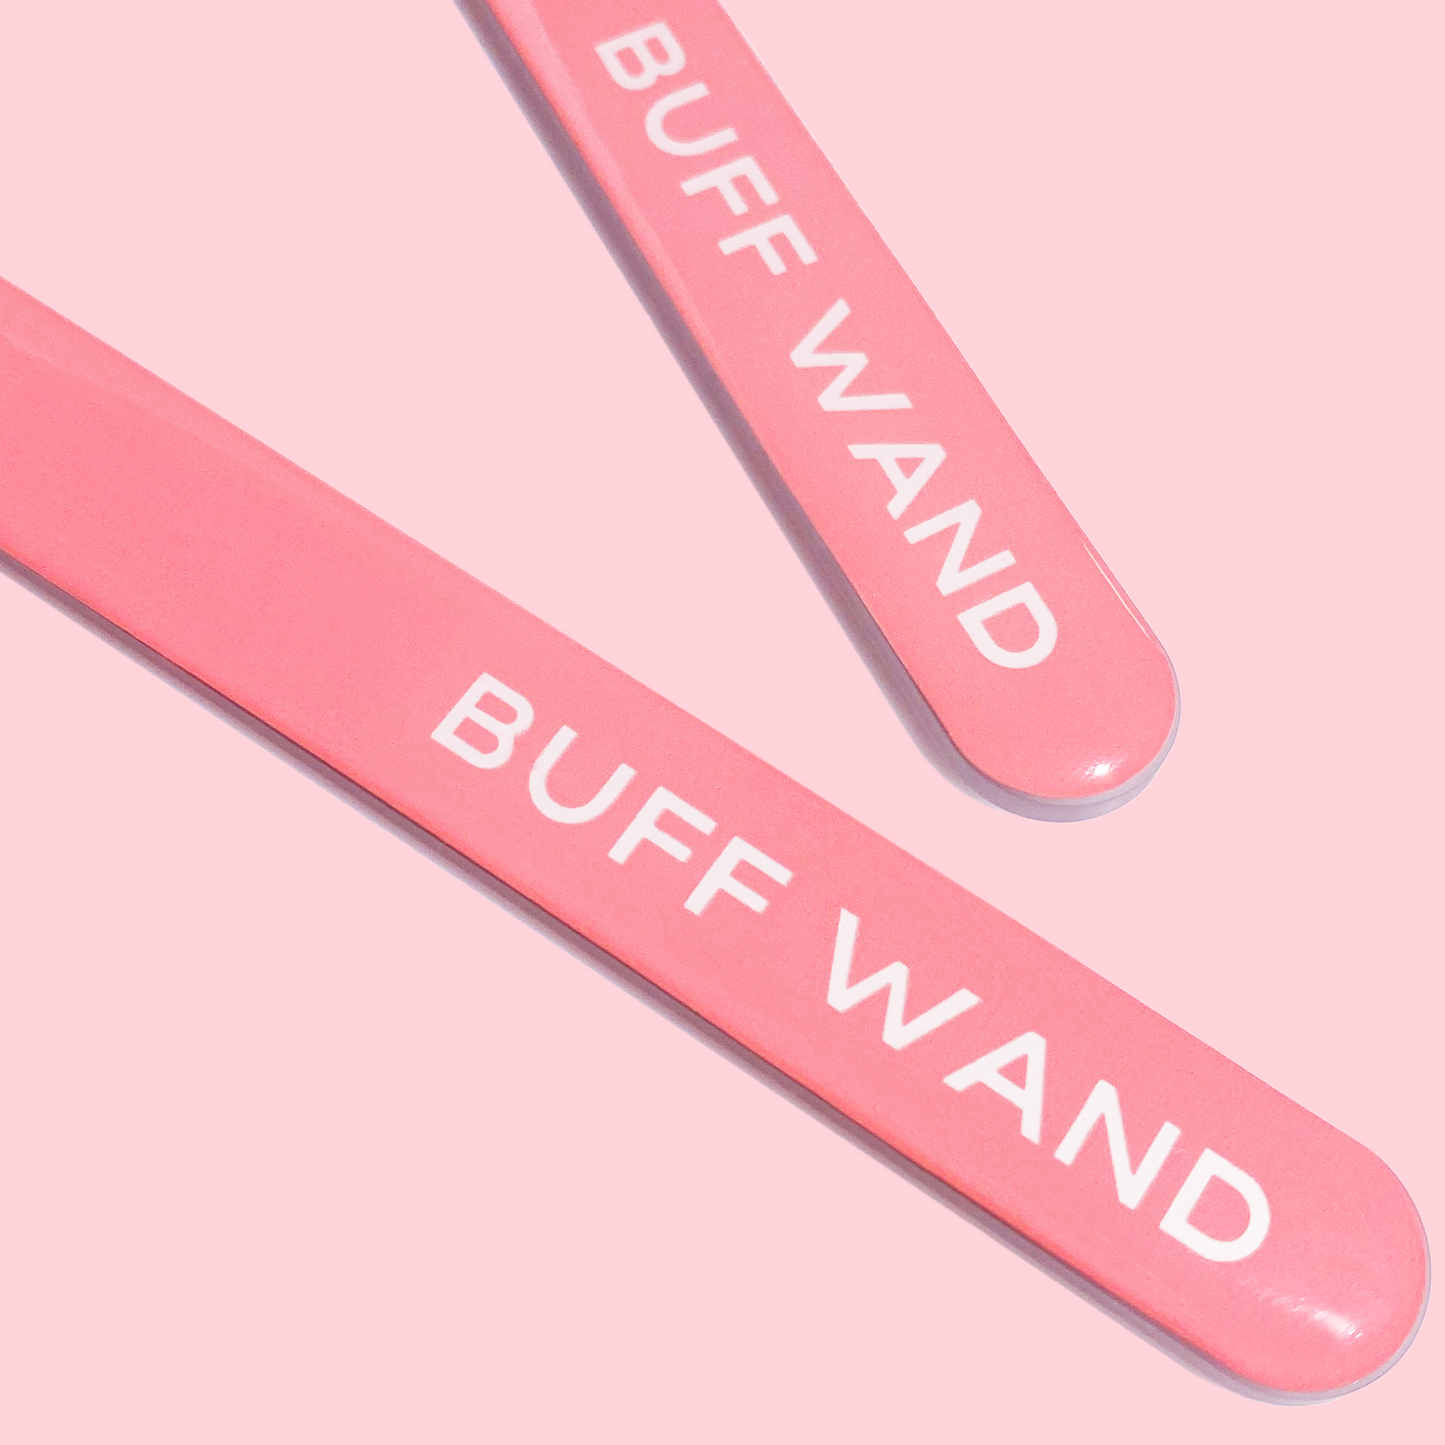 Buff Wand - Nano Glass Nail File Manicure Wand (2 Pack)